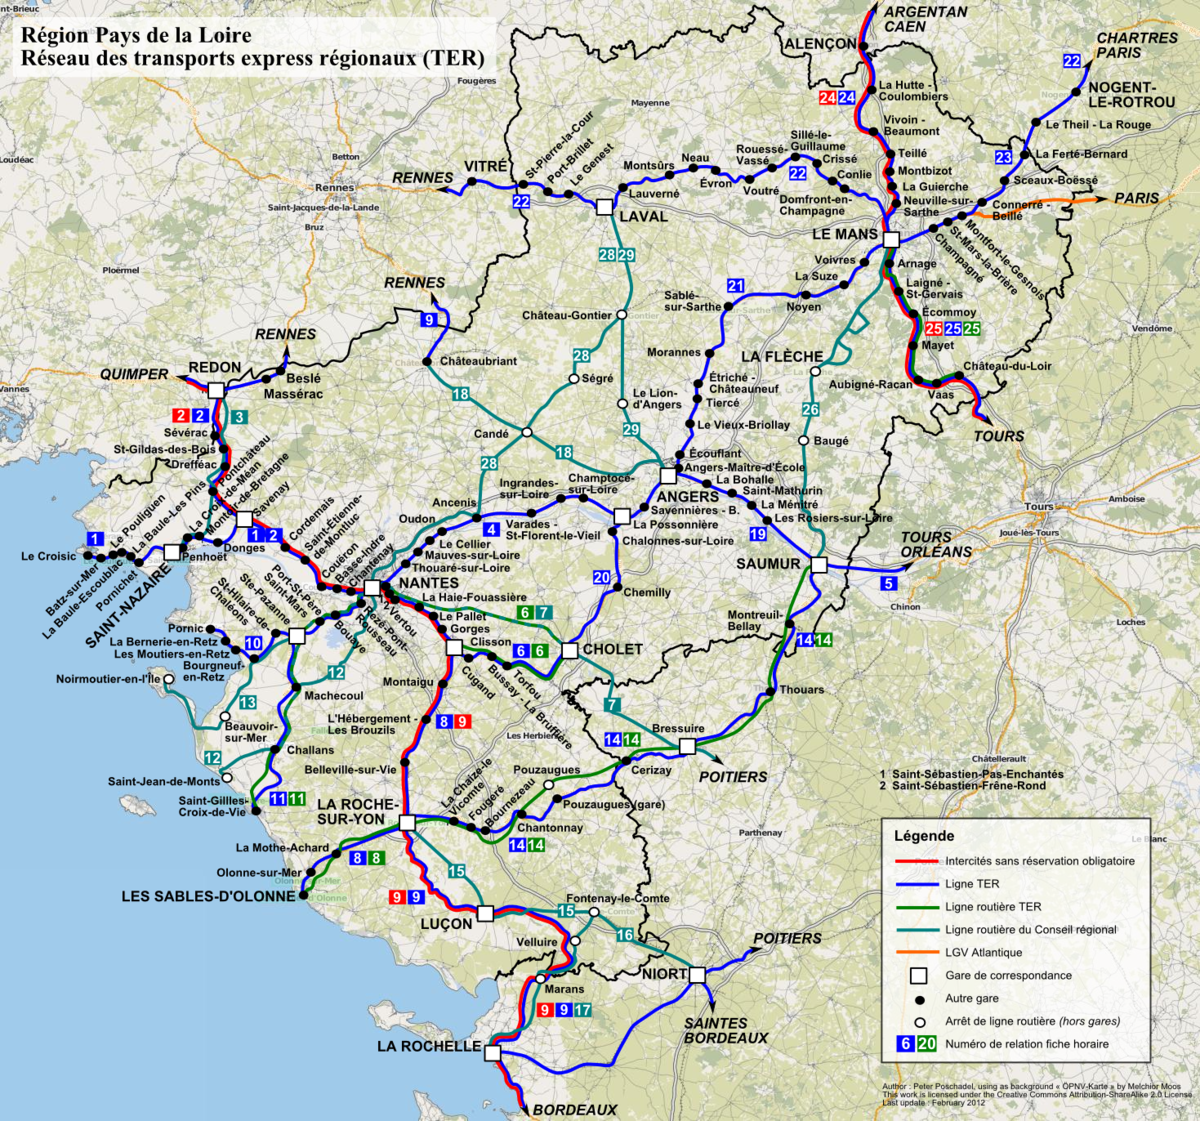 carte du pays de la loire File:TER Pays de la Loire, carte du réseau.png   Wikimedia Commons